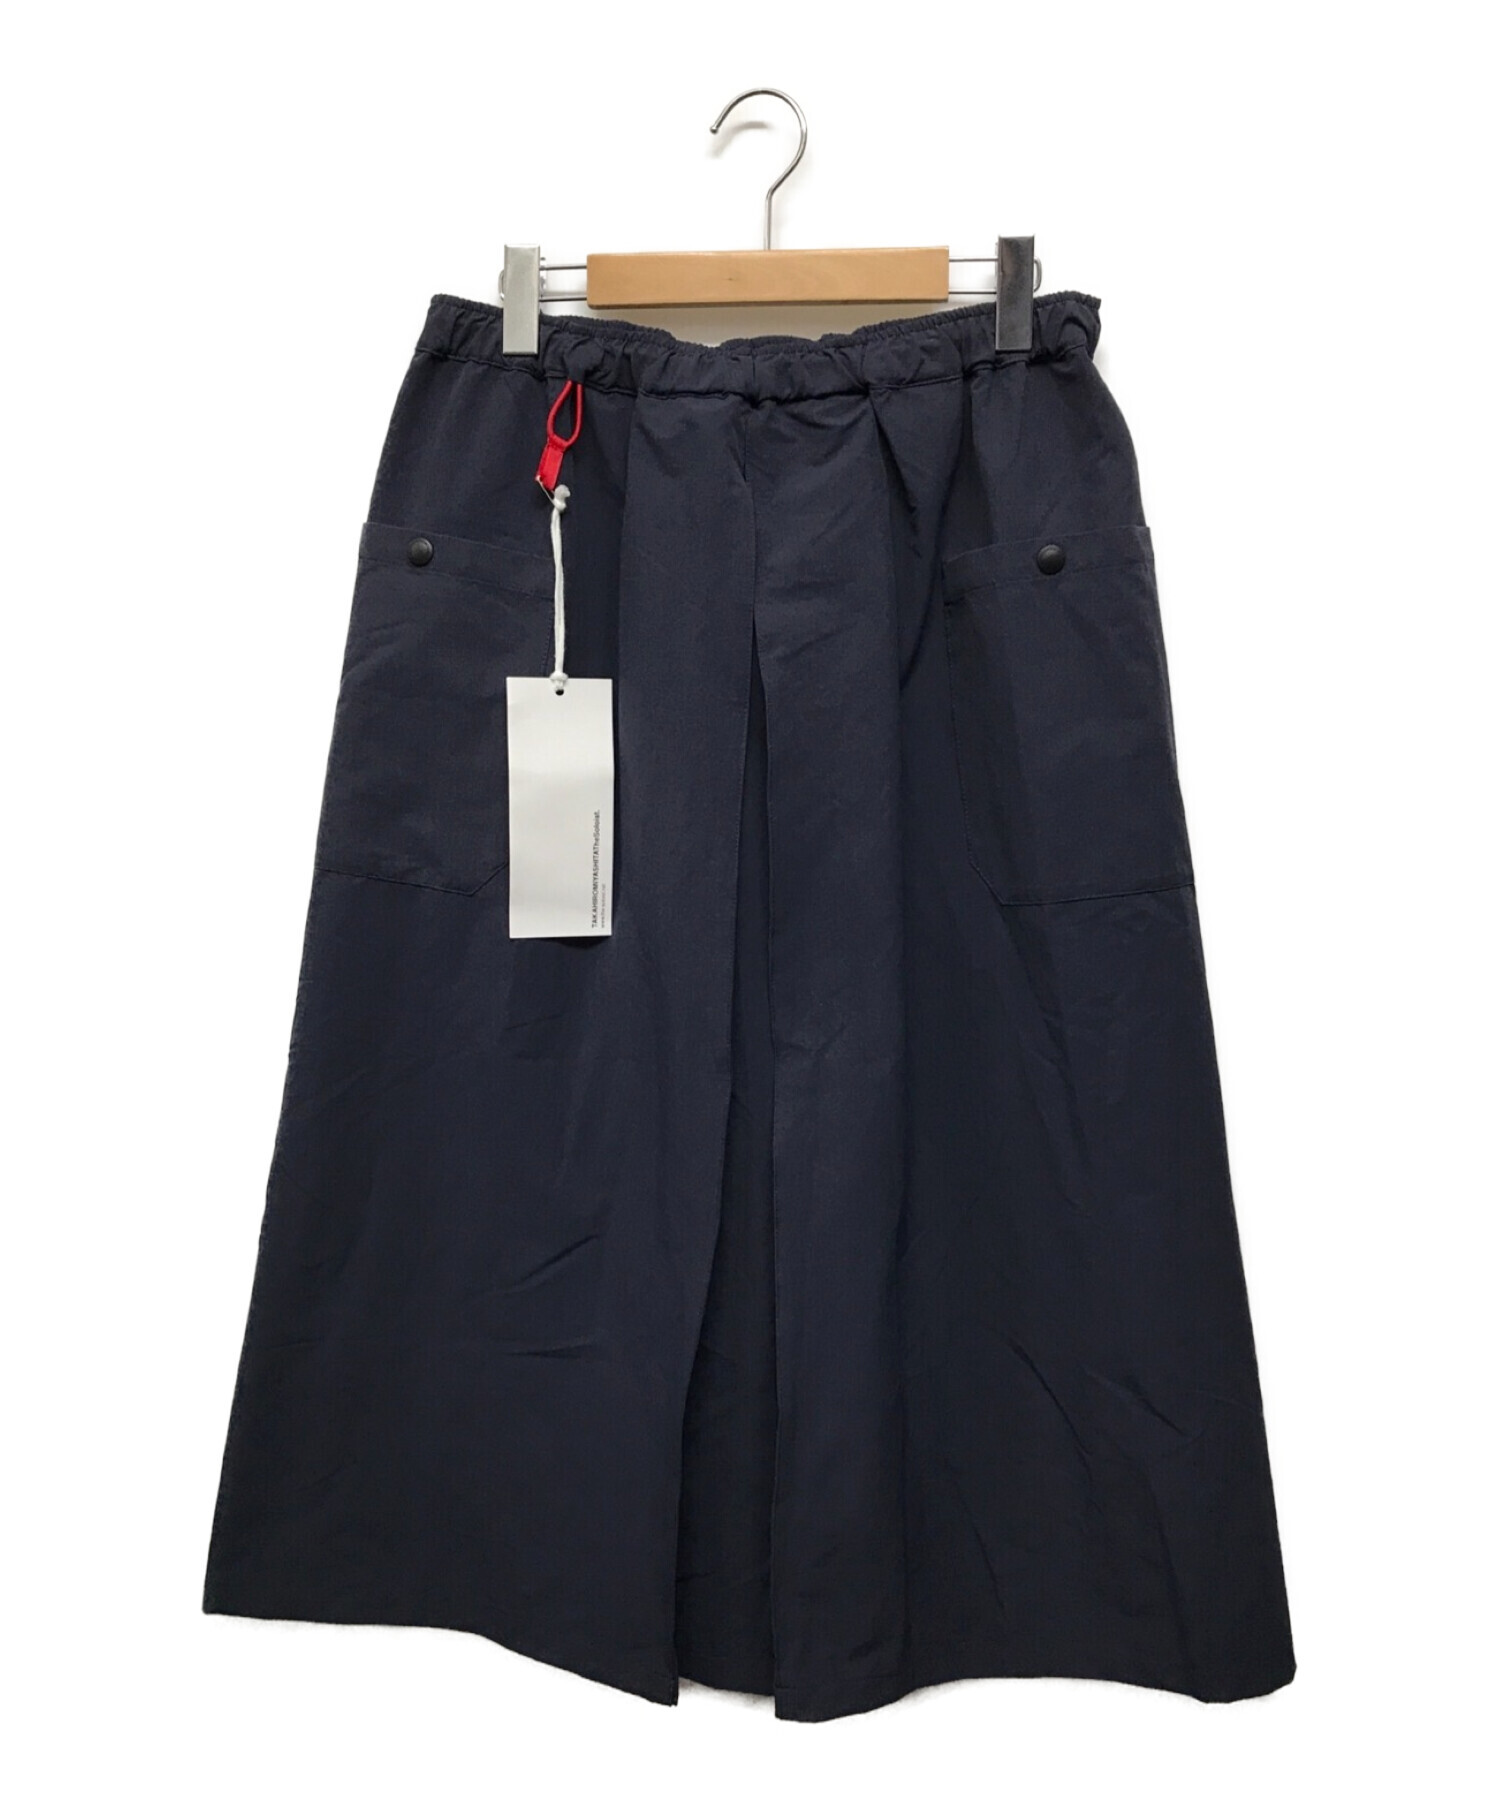 TAKAHIROMIYASHITA TheSoloIst. (タカヒロミヤシタザソロイスト) hakama skirt.(AXESQUIN) ネイビー  サイズ:SIZE M